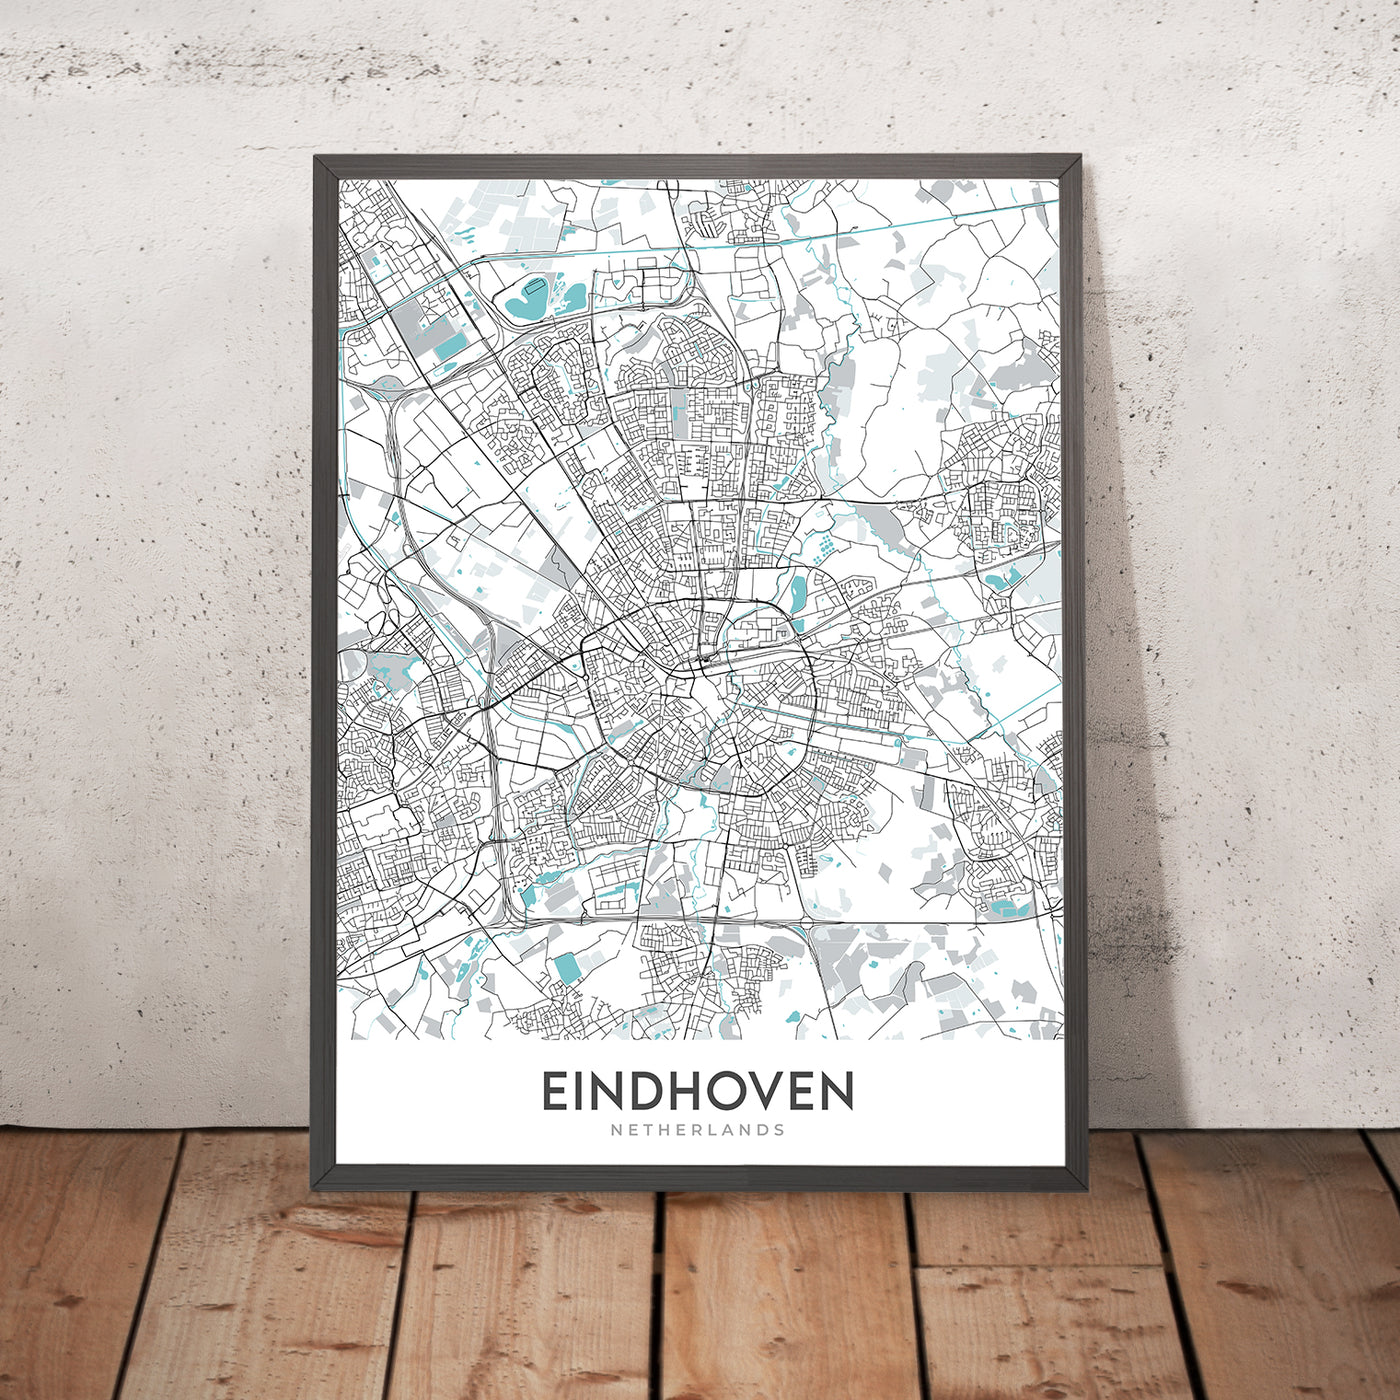 Moderner Stadtplan von Eindhoven, Niederlande: Centrum, Philips Stadion, A2, A67, Tongelre